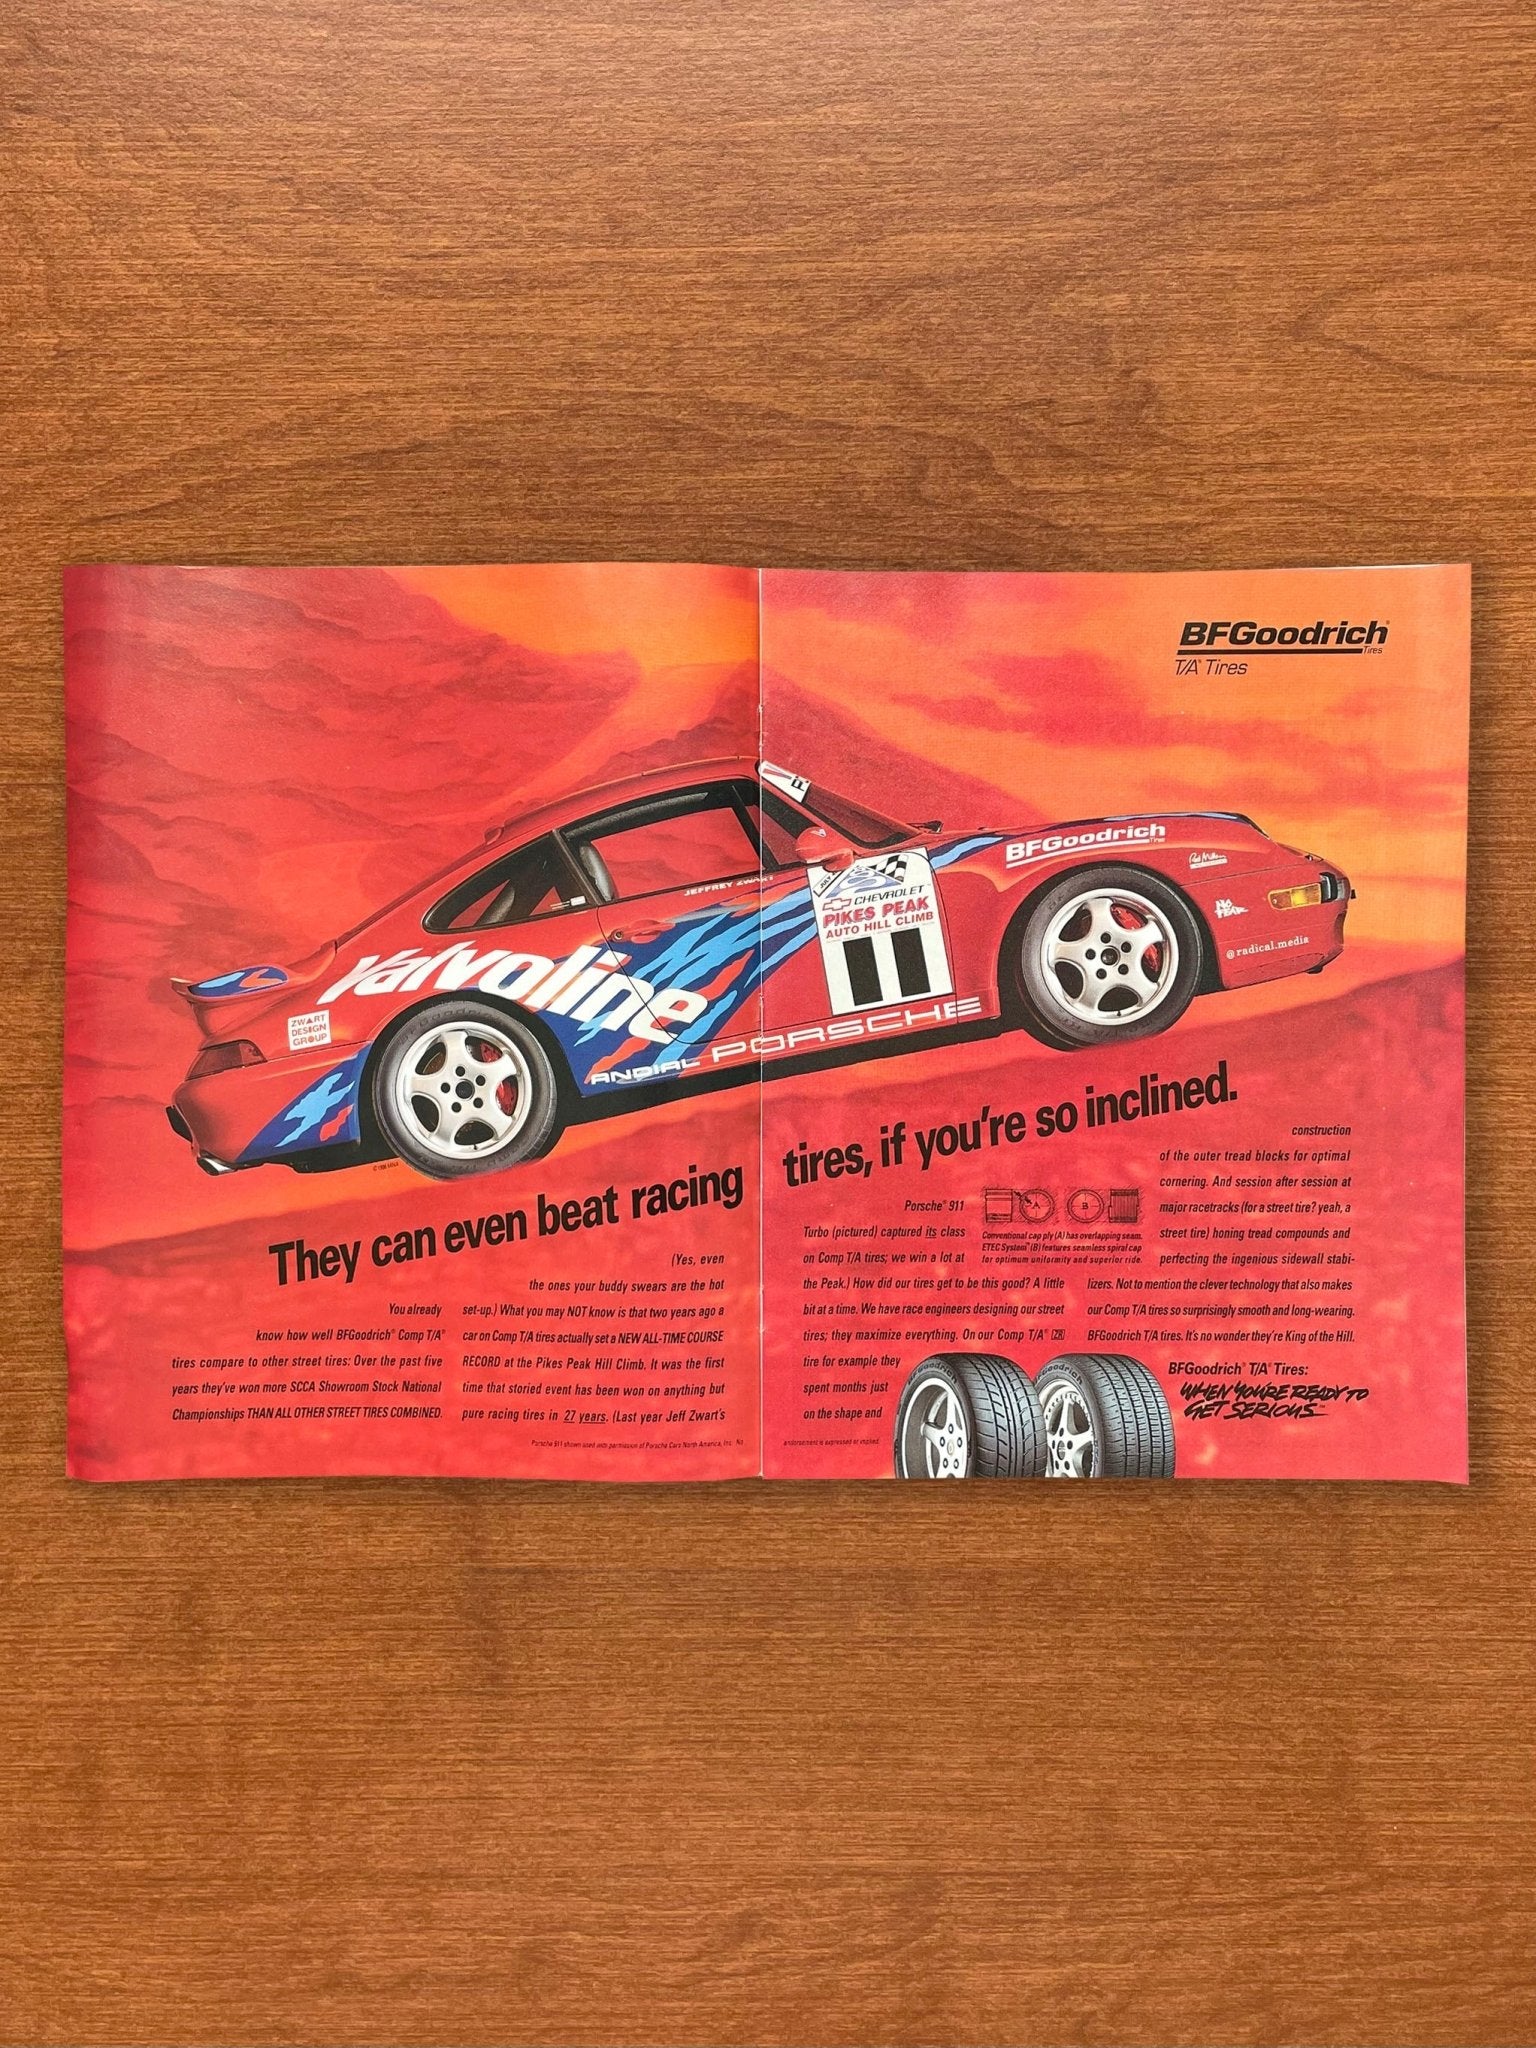 1996 BFGoodrich featuring Jeff Zwart's Porsche 911 Advertisement